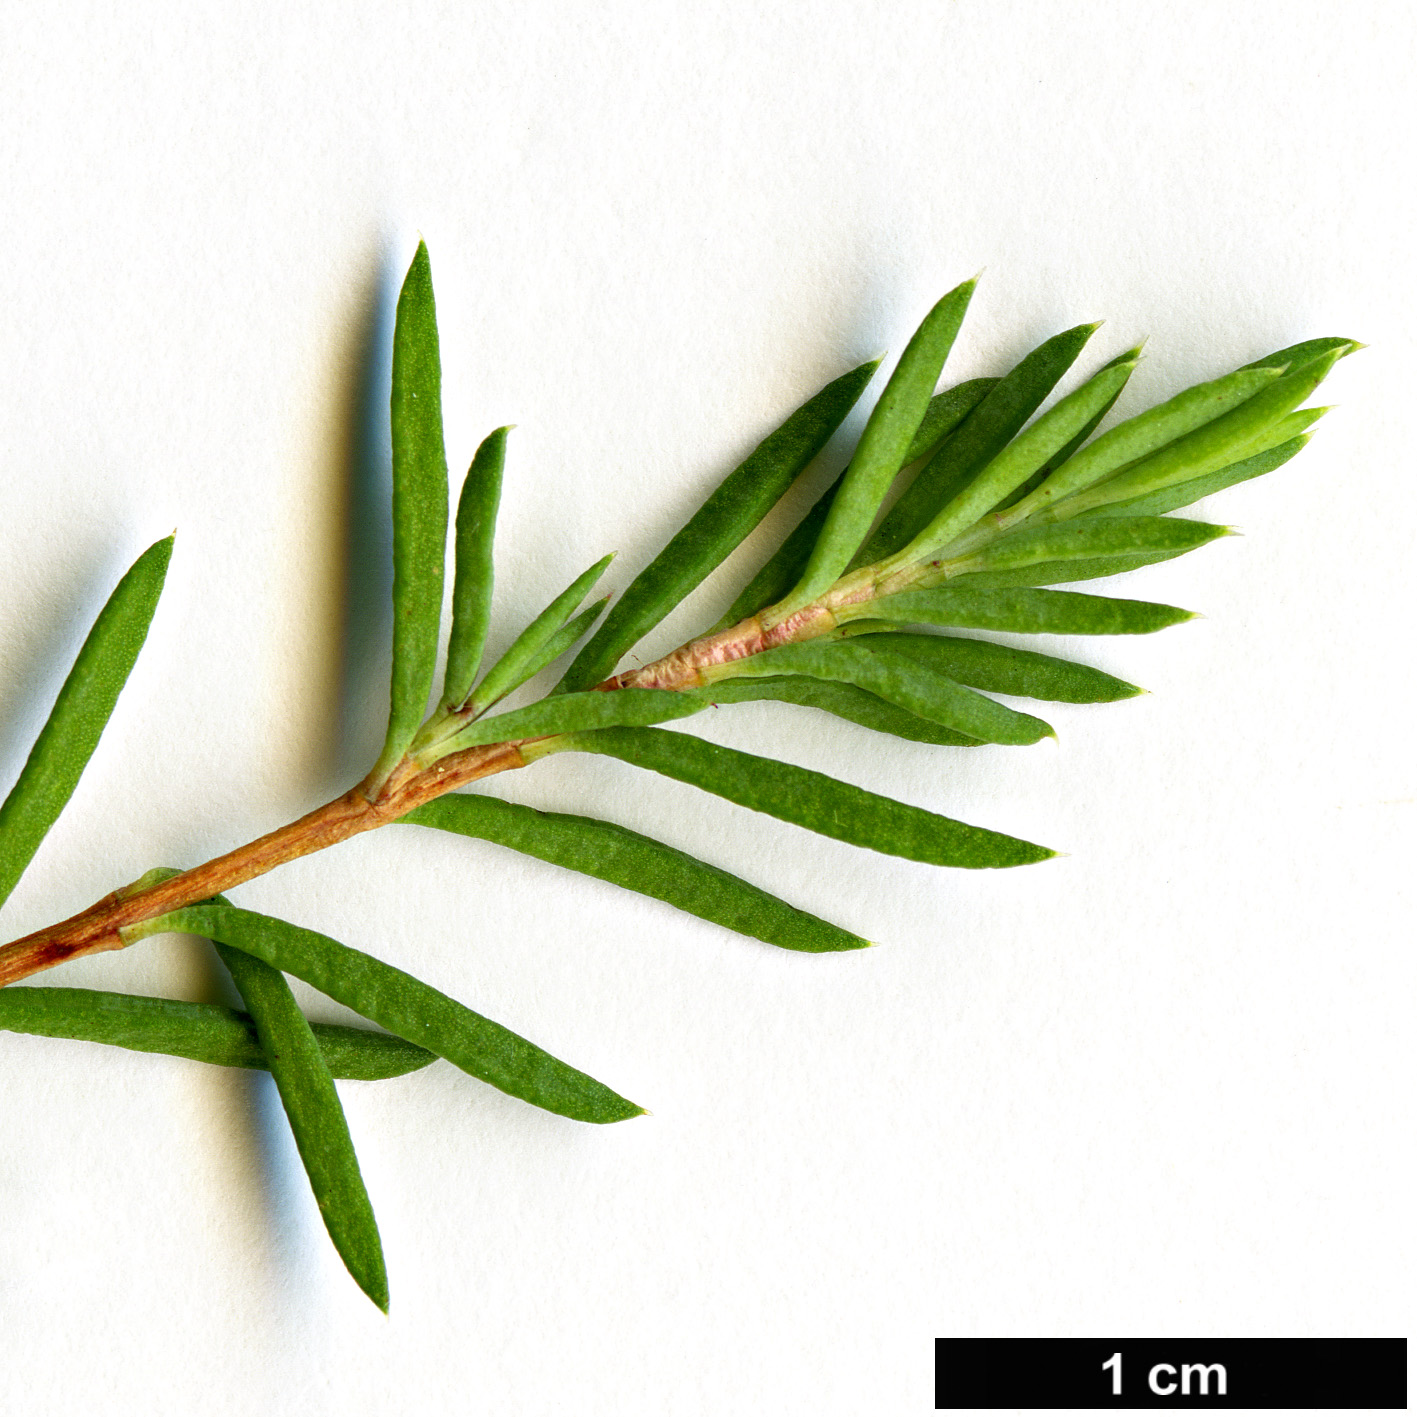 High resolution image: Family: Myrtaceae - Genus: Darwinia - Taxon: taxifolia